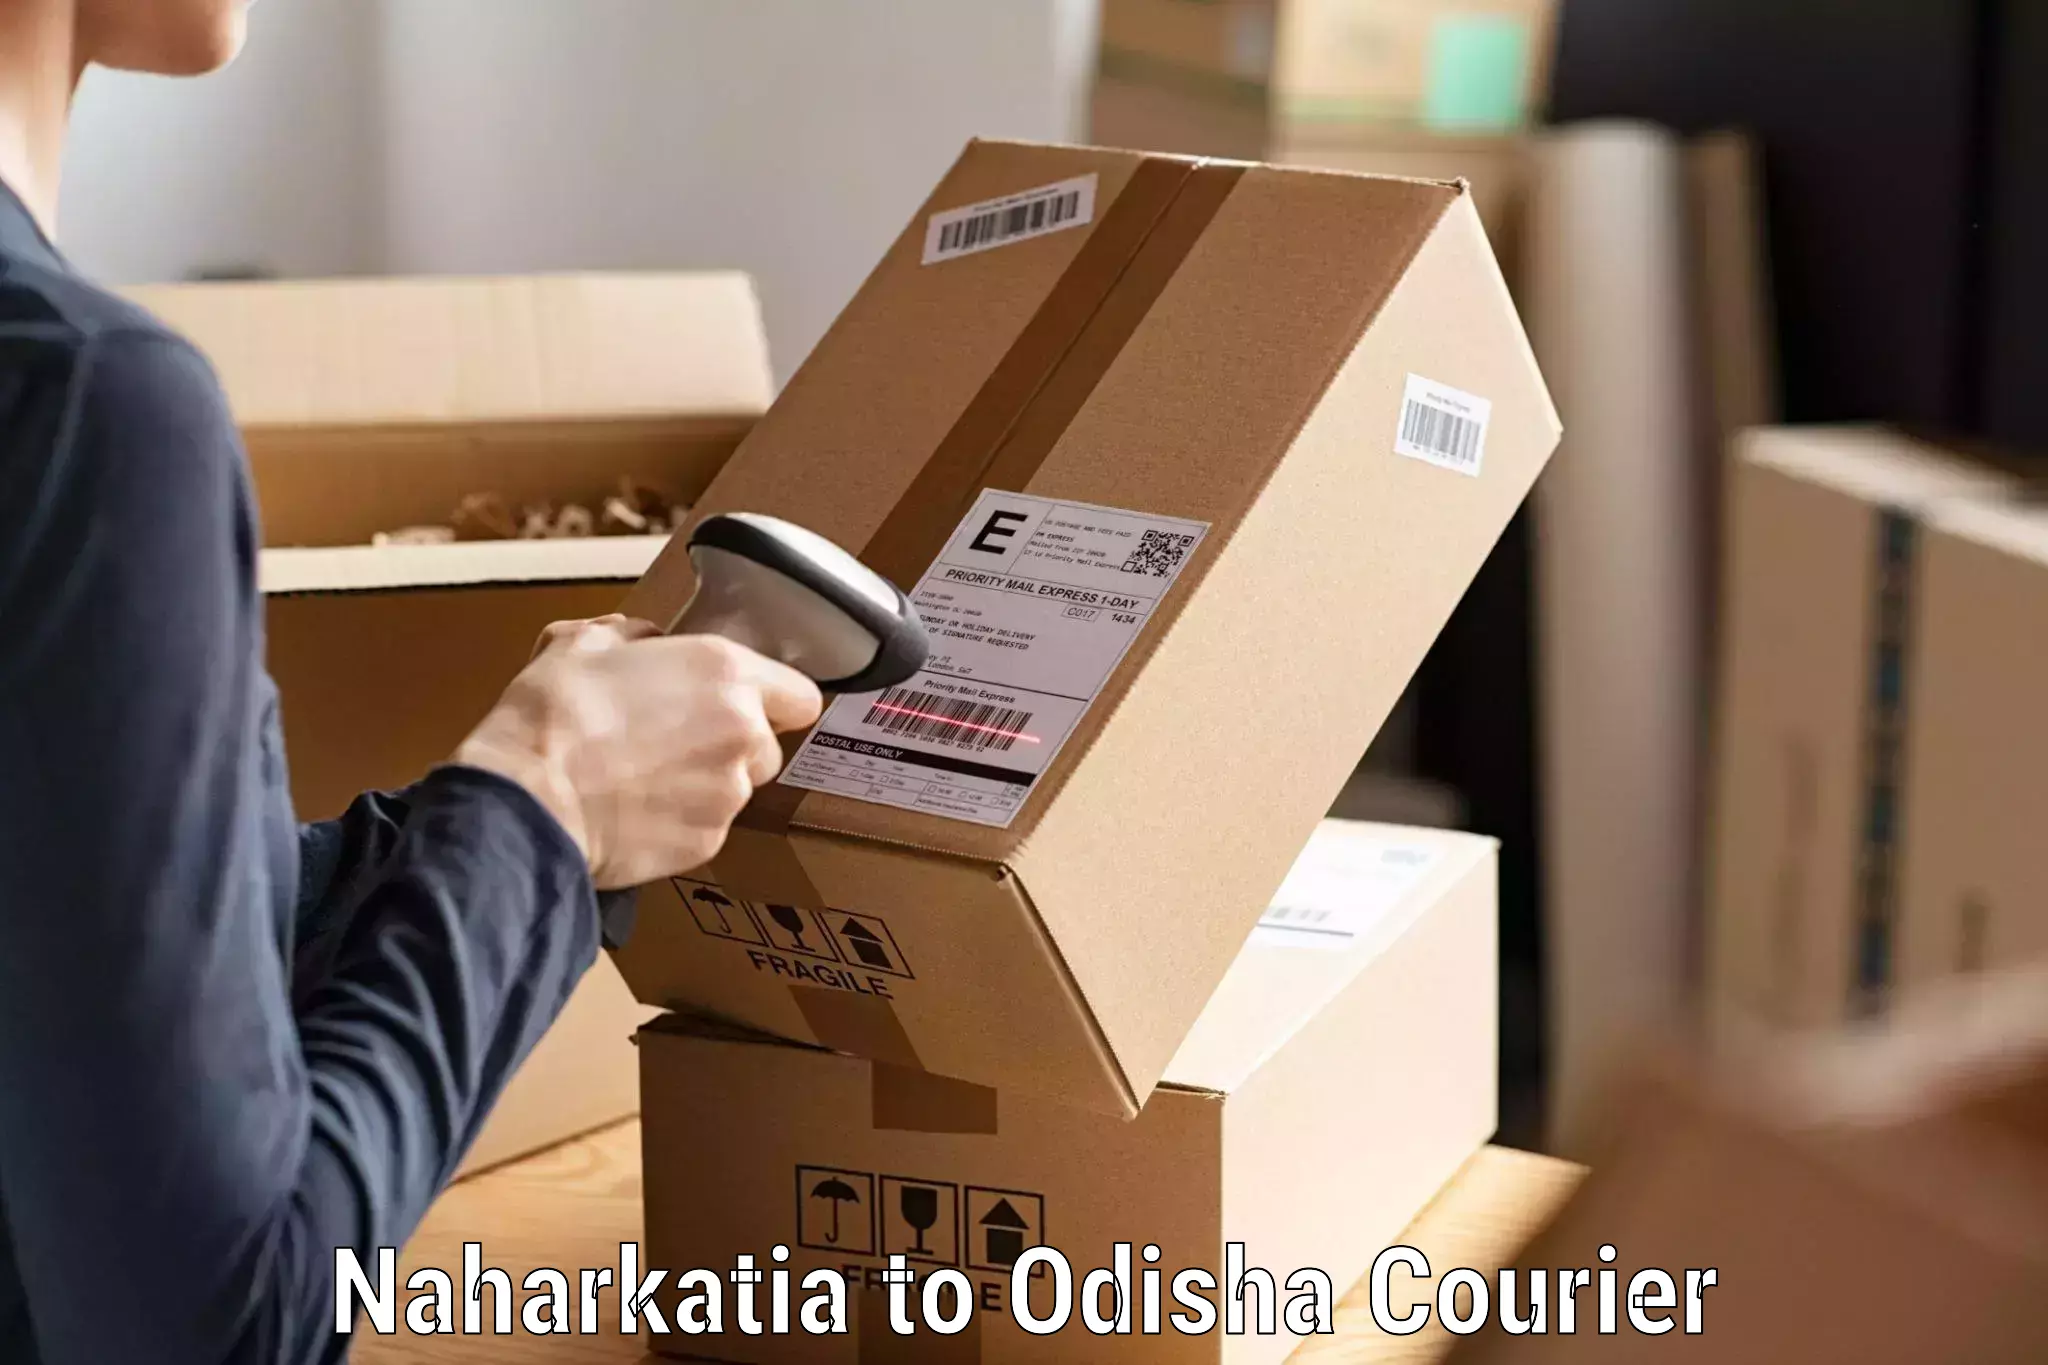 High-performance logistics Naharkatia to Nabarangpur